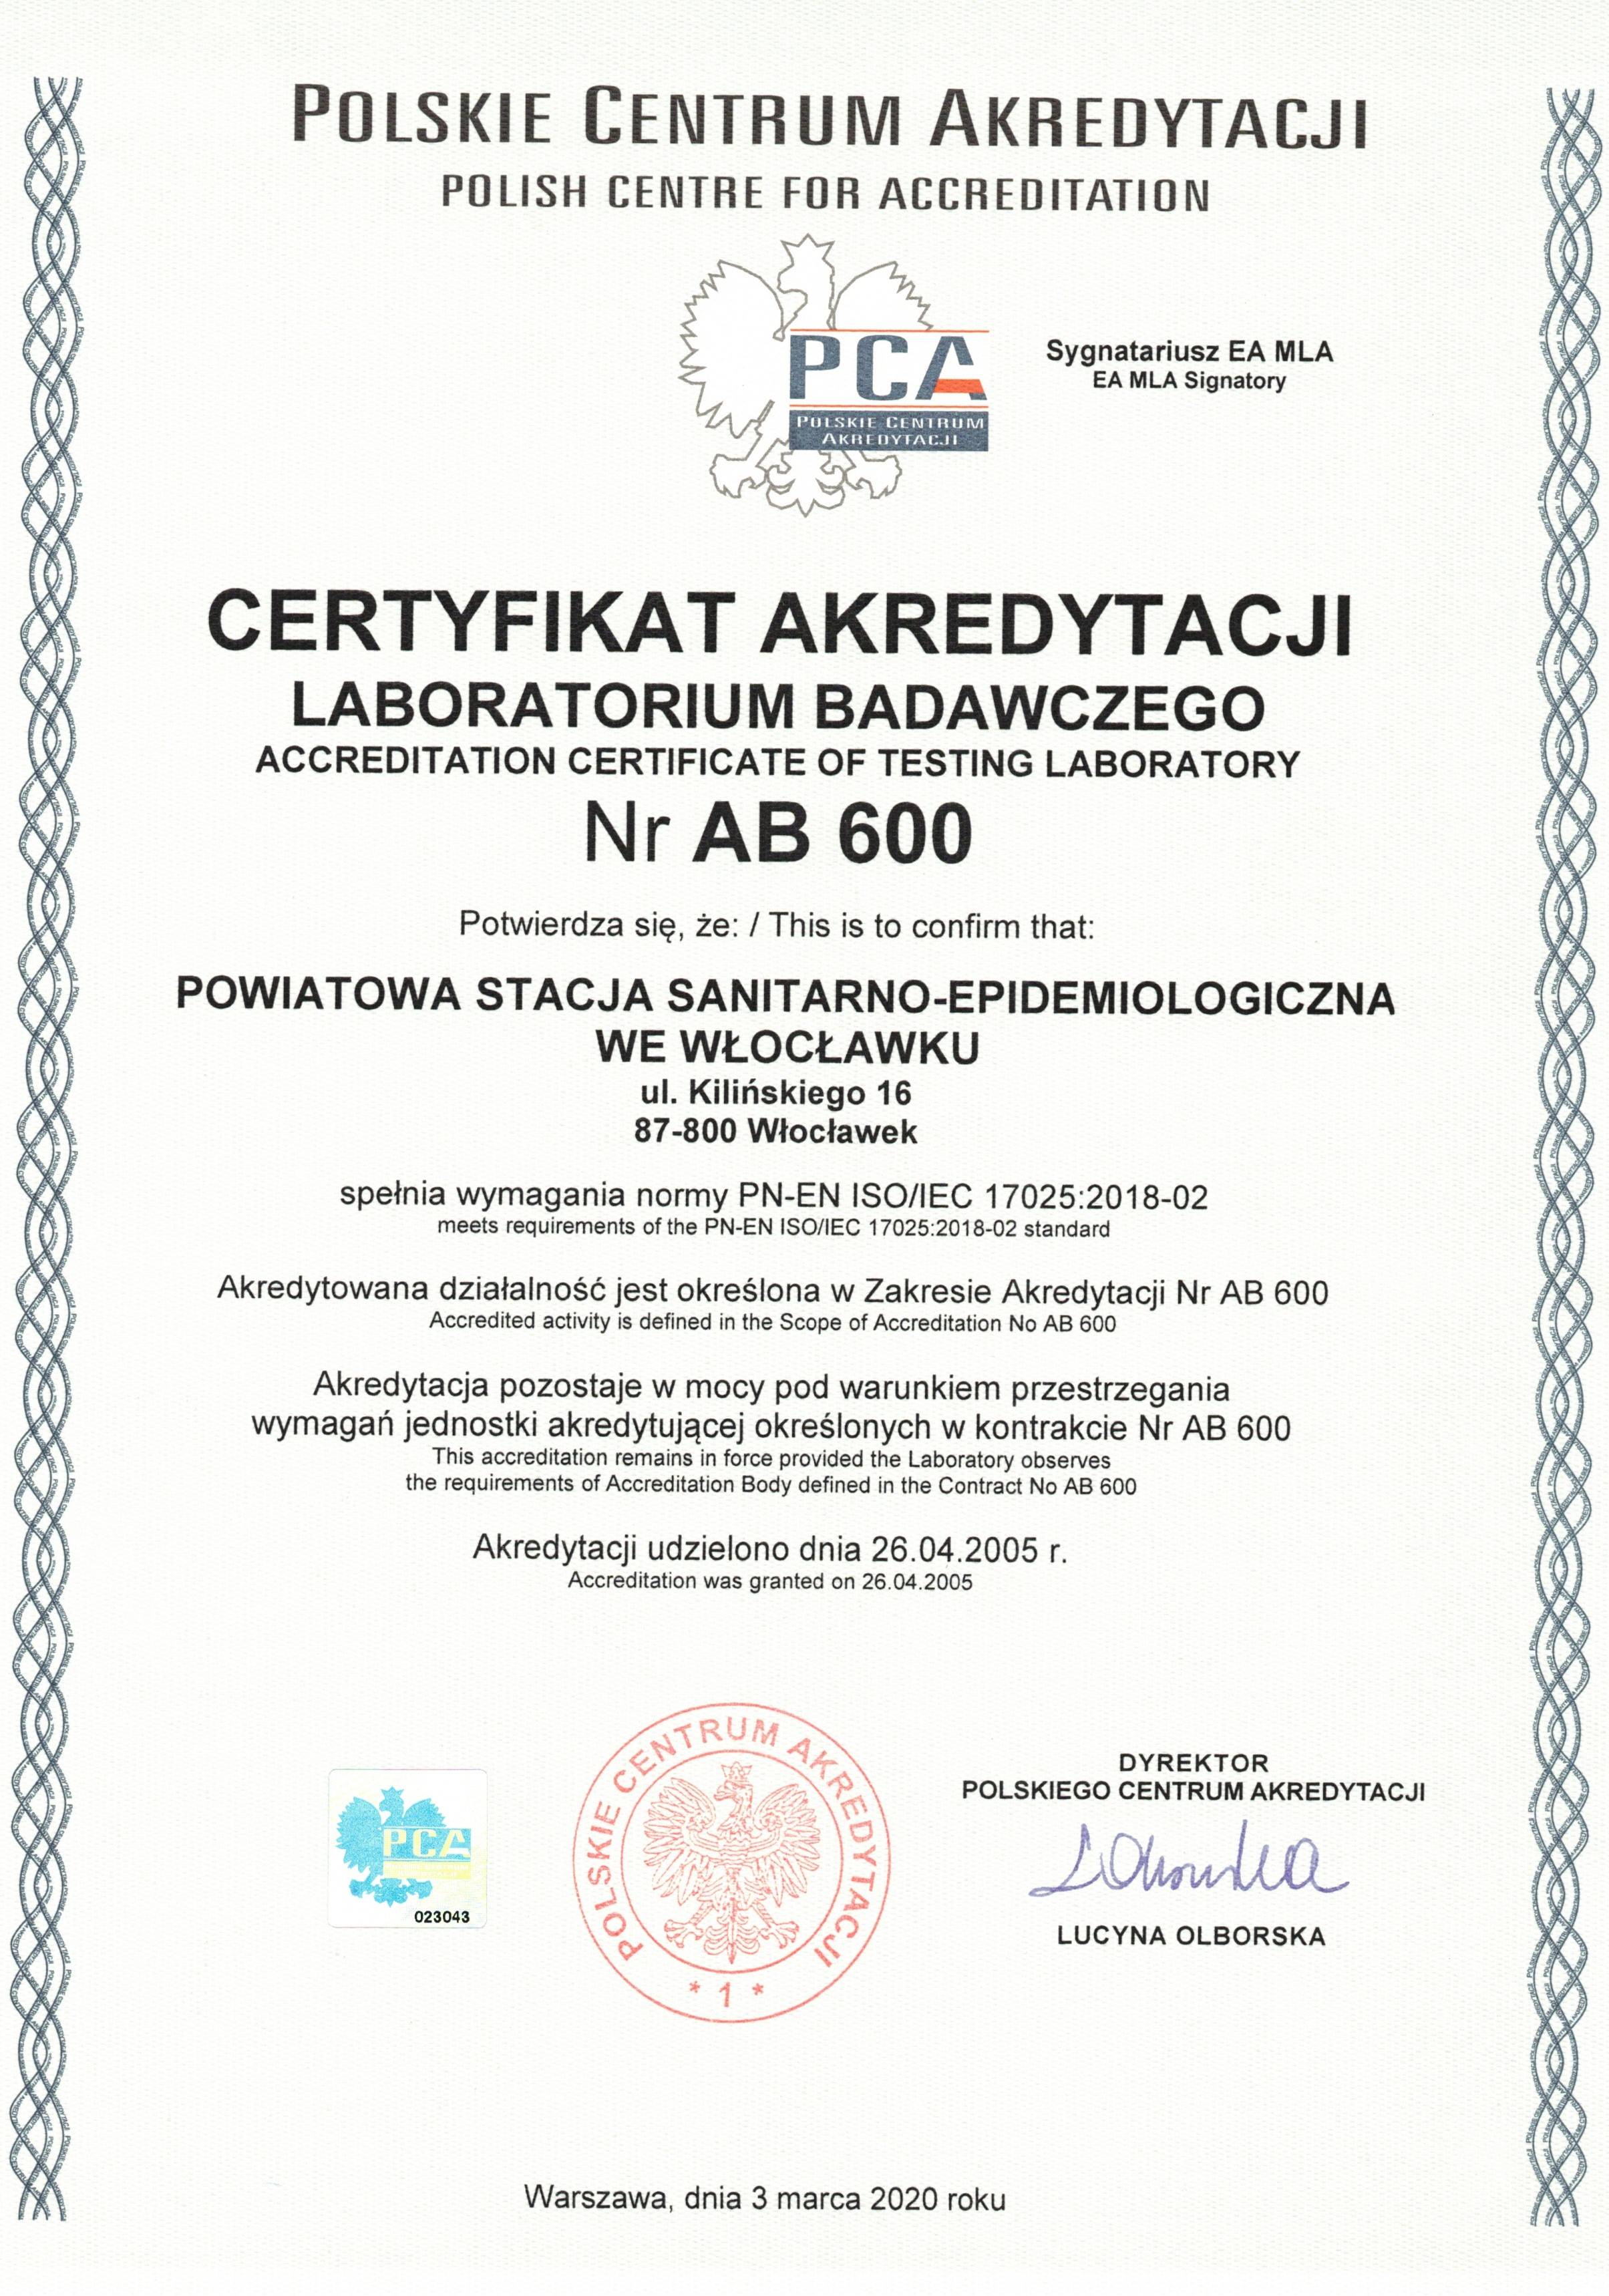 Certyfikat akredytacji Laboratorium Badawczego Nr AB 600 dla Powiatowej Stacji Sanitarno-Epidemiologicznej we Włocławku